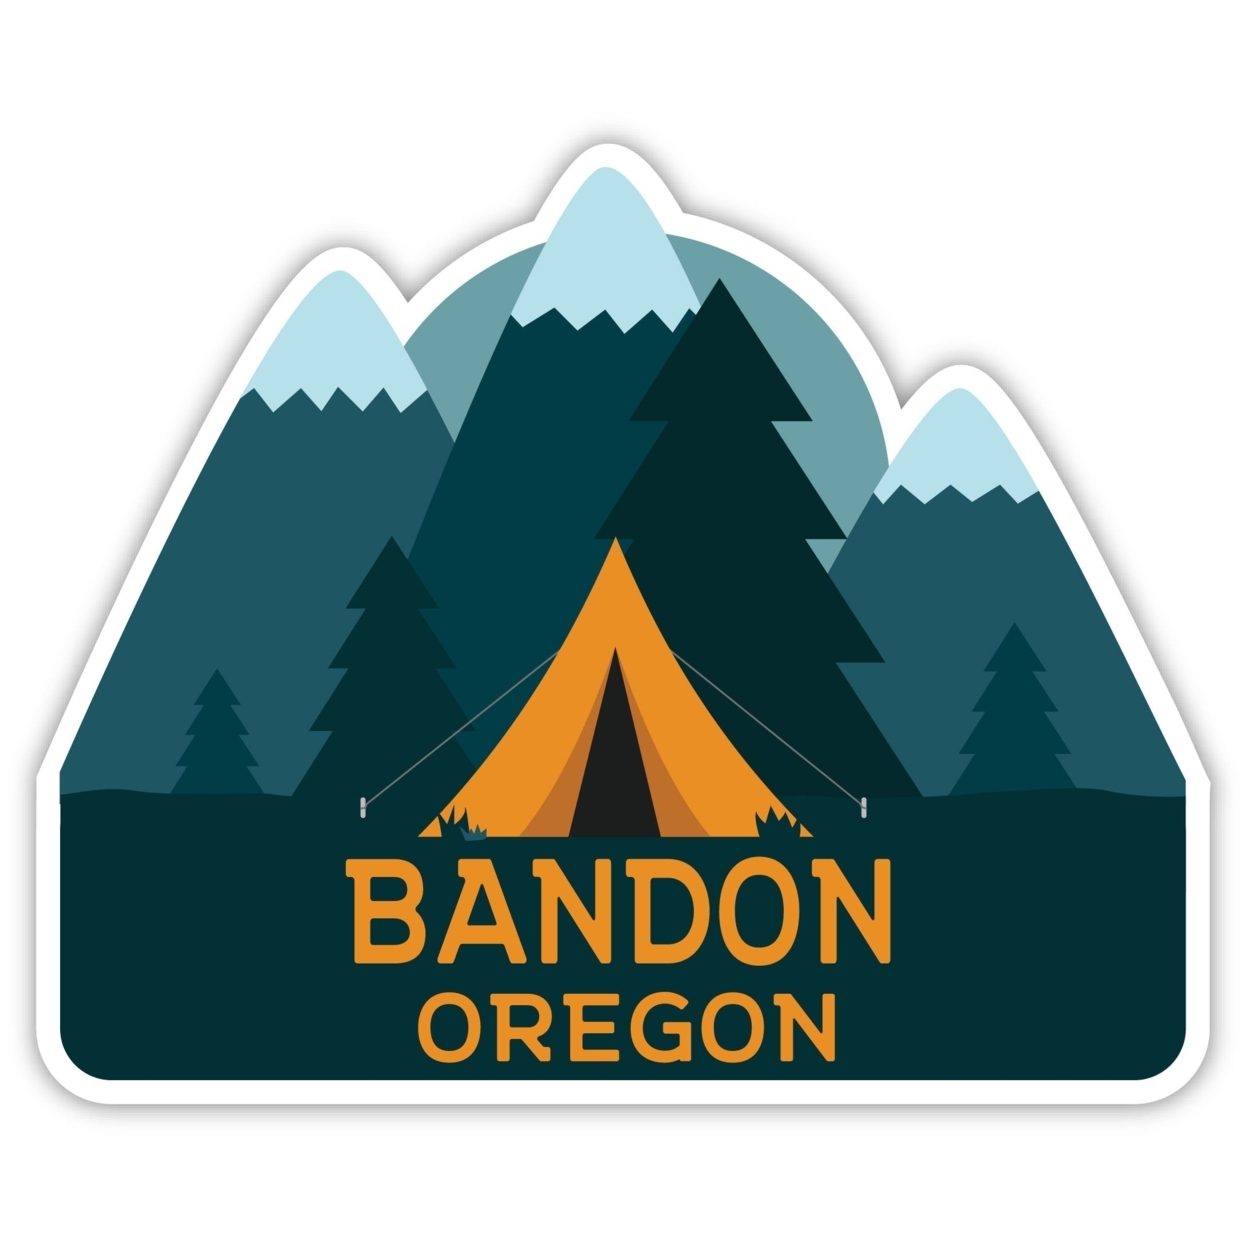 Bandon Oregon Souvenir Decorative Stickers (Choose Theme And Size) - Single Unit, 8-Inch, Tent